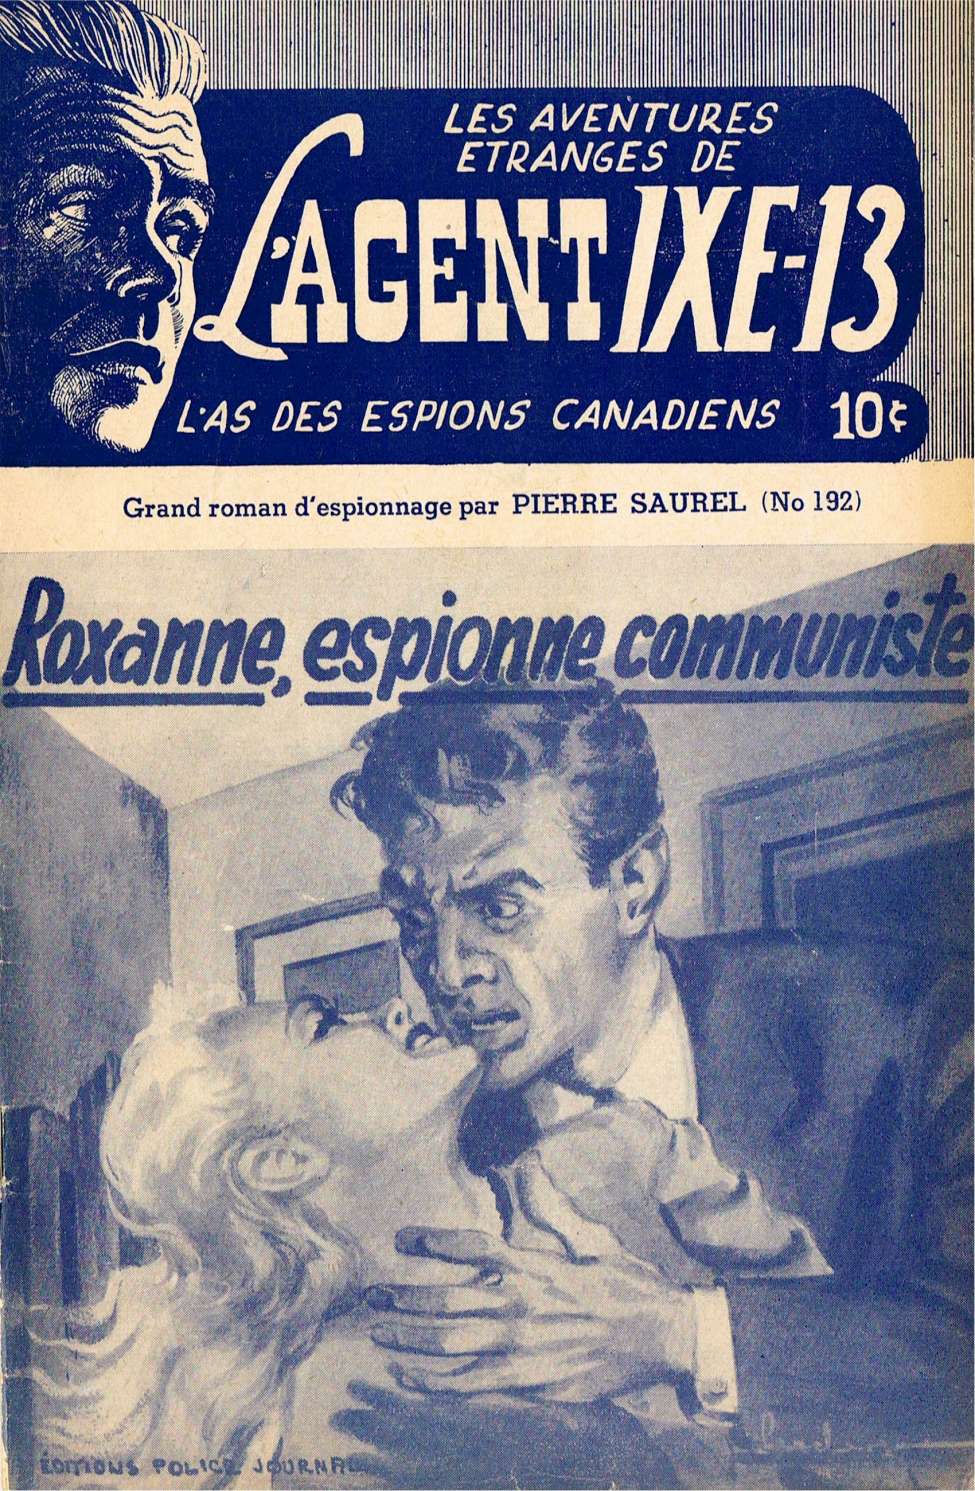 Comic Book Cover For L'Agent IXE-13 v2 192 - Roxanne, espionne communiste